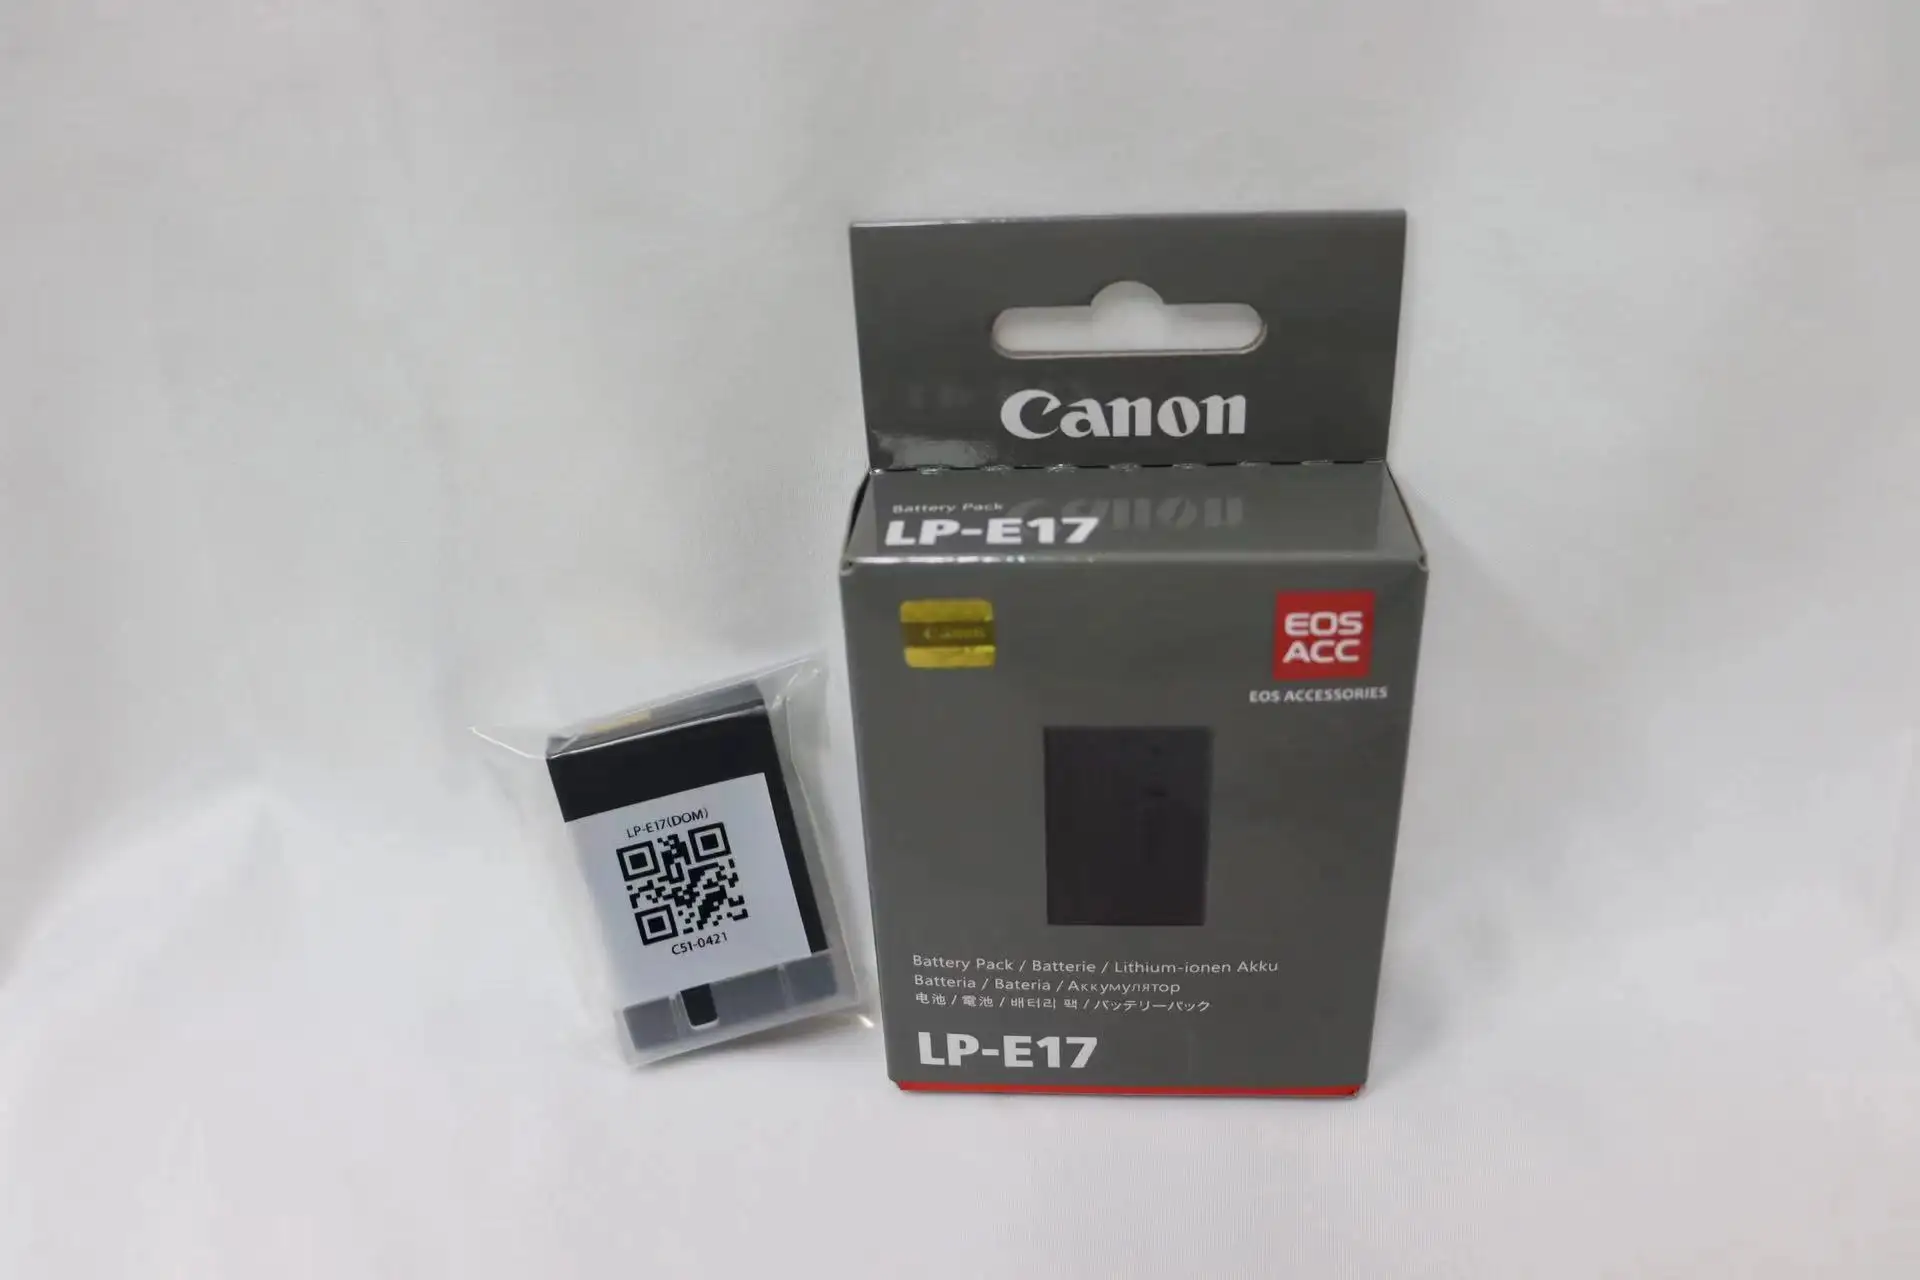 High Quality Portable Battery Camera LP-E17 Camera Battery Pouch LP-E17 Camera Battery